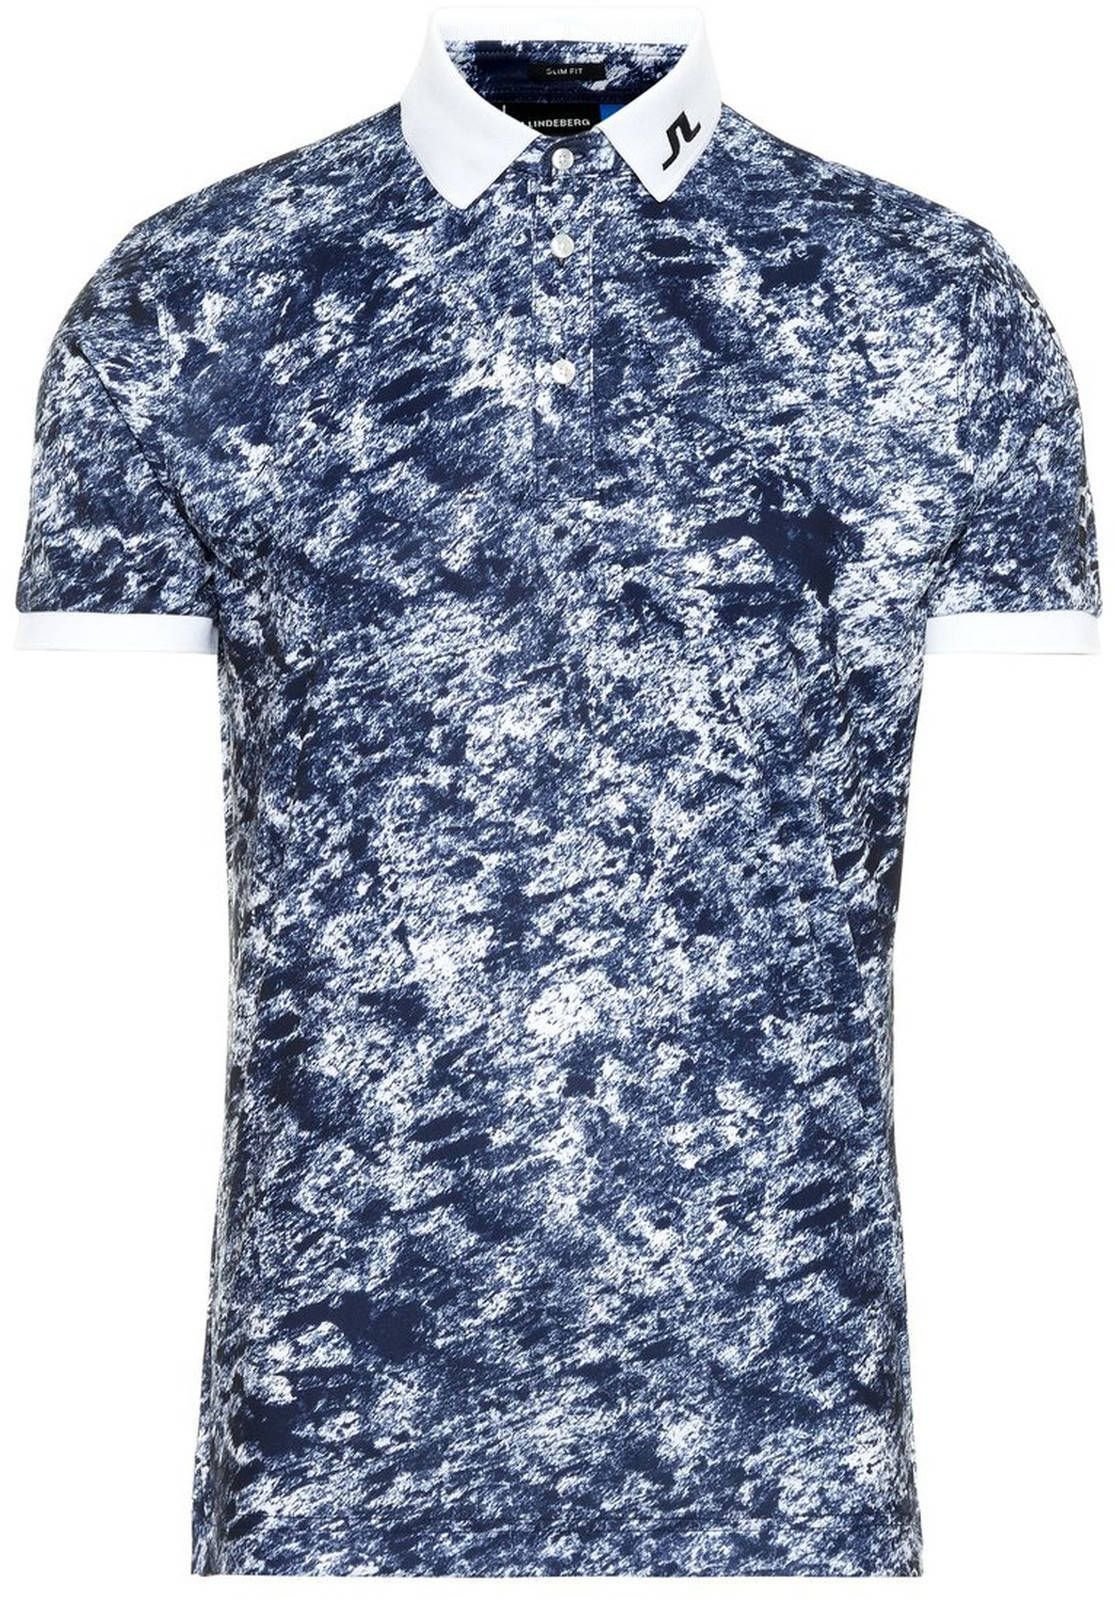 Πουκάμισα Πόλο J.Lindeberg Tour Tech Slim Mens Polo Shirt Blue/Ocean Camou XL